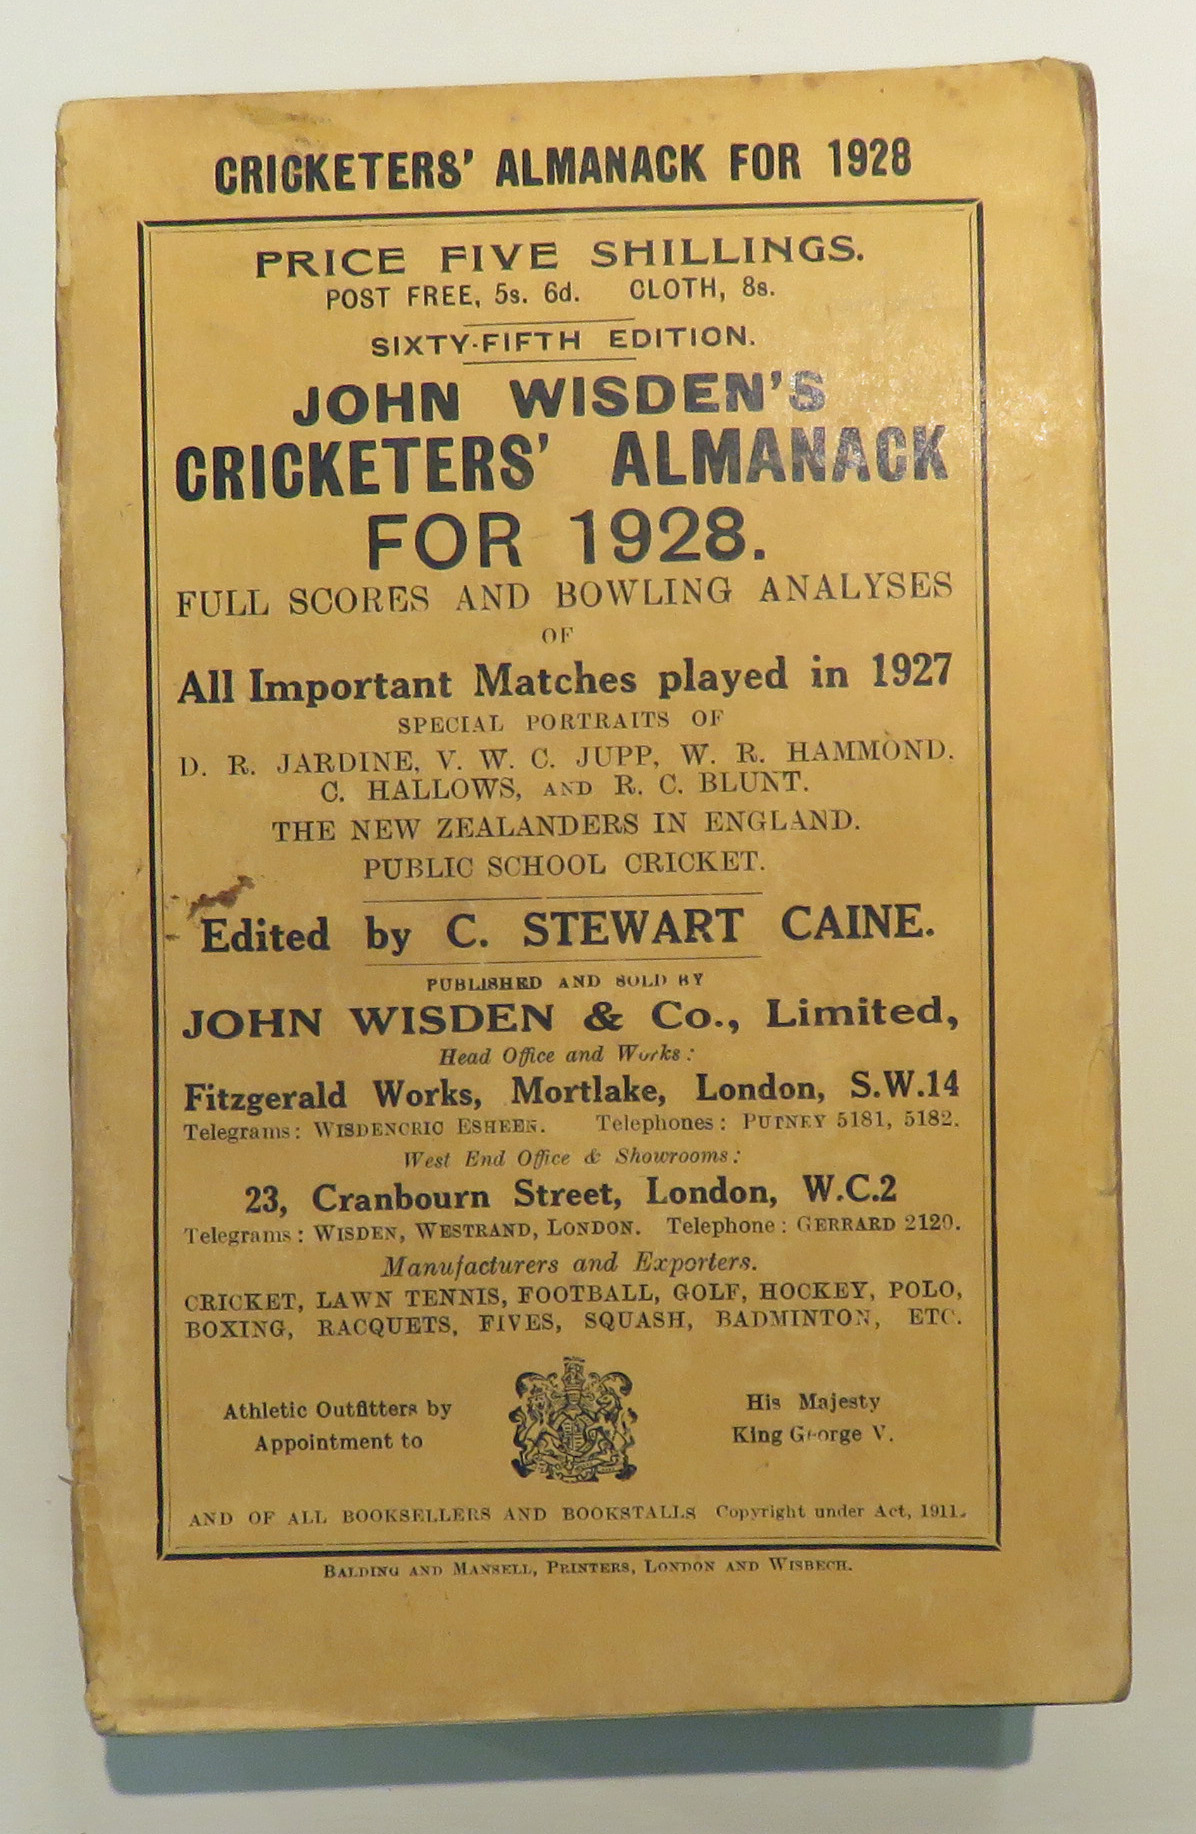 John Wisden's Cricketers' Almanack For 1928